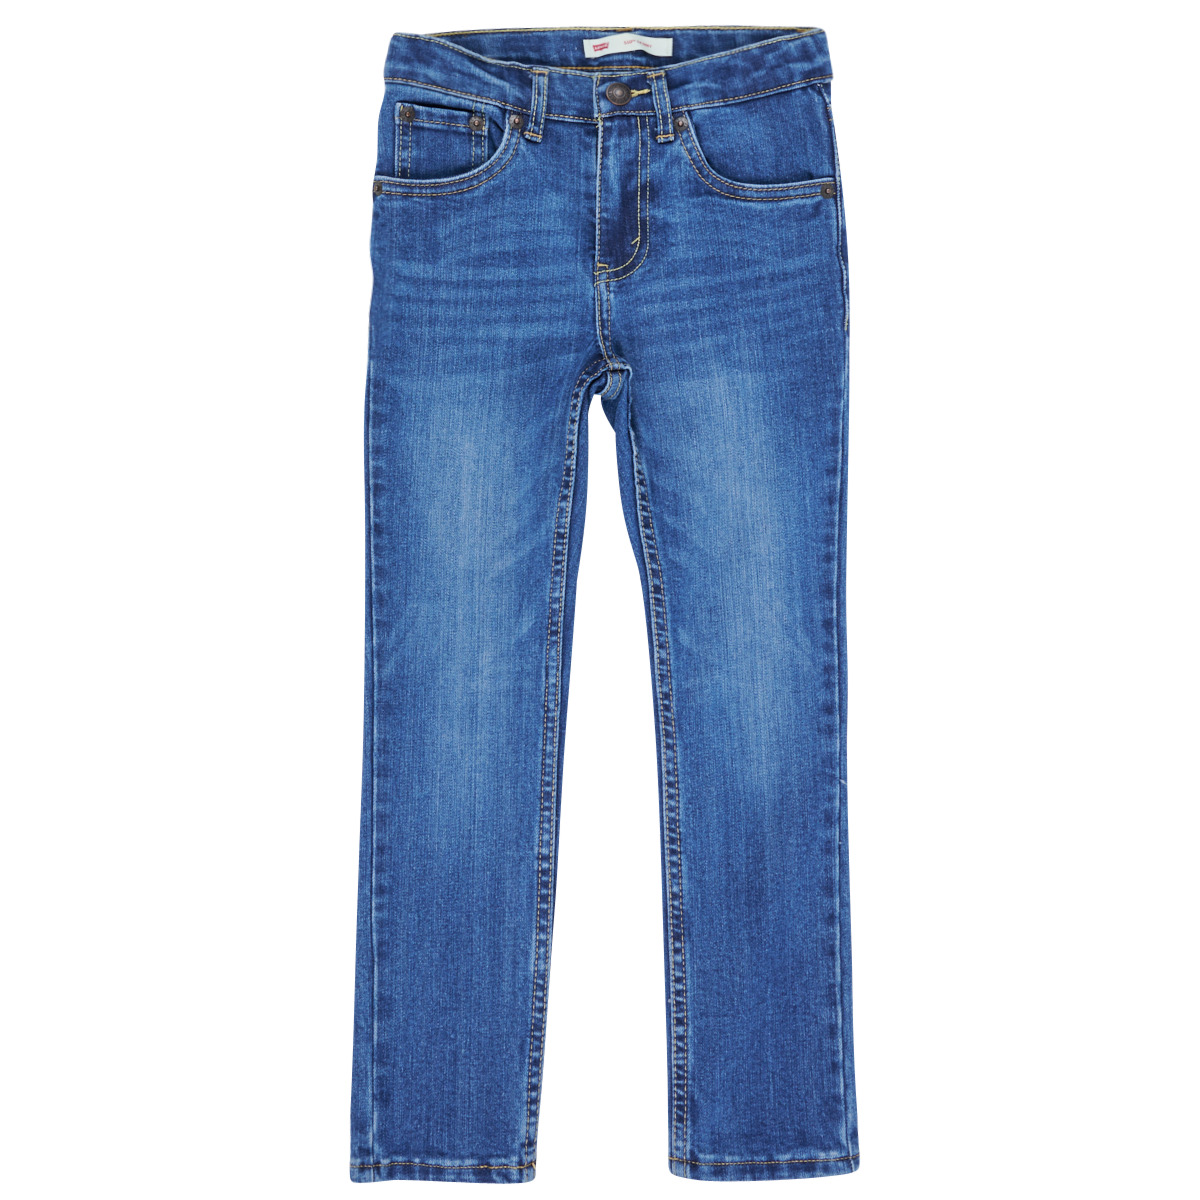 Skinny jeans Levis 510 BI-STRETCH